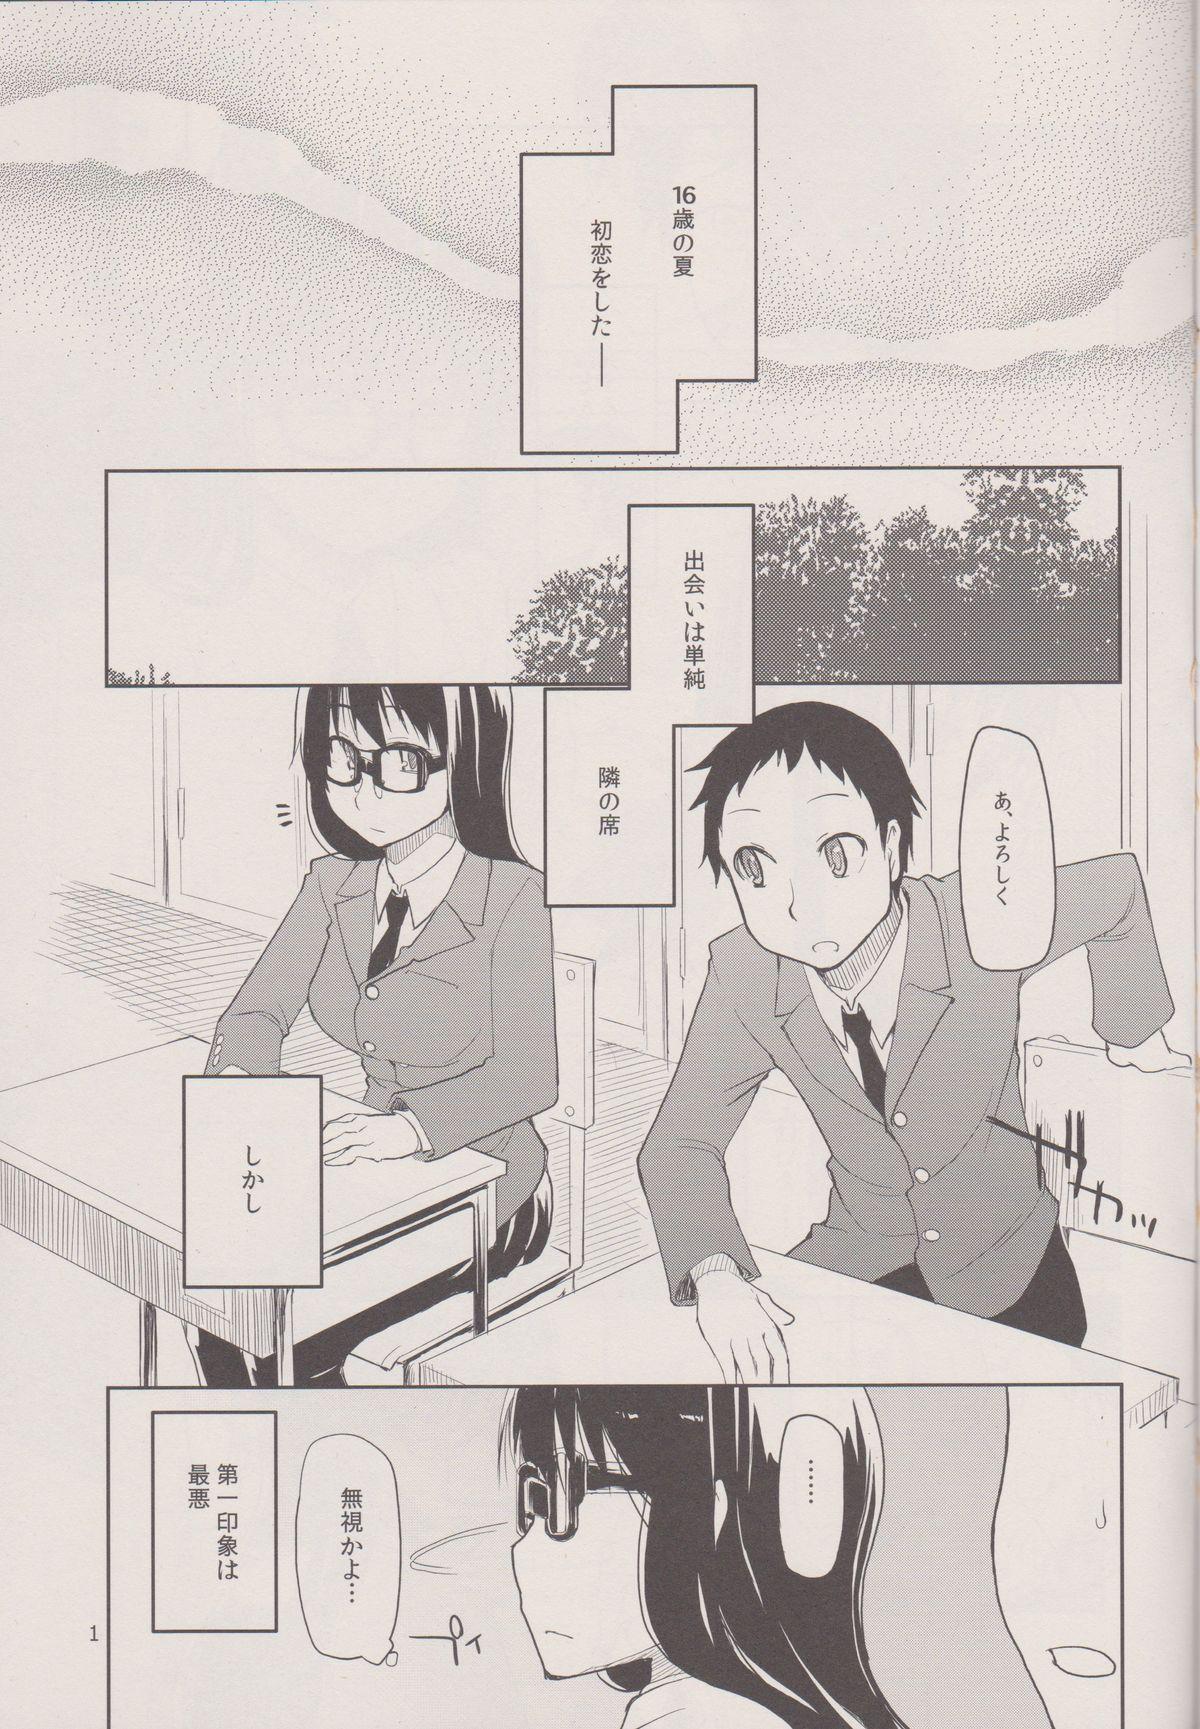 8teenxxx Natsuzuka san no Himitsu. Vol.1 Deai Hen Prostituta - Page 3